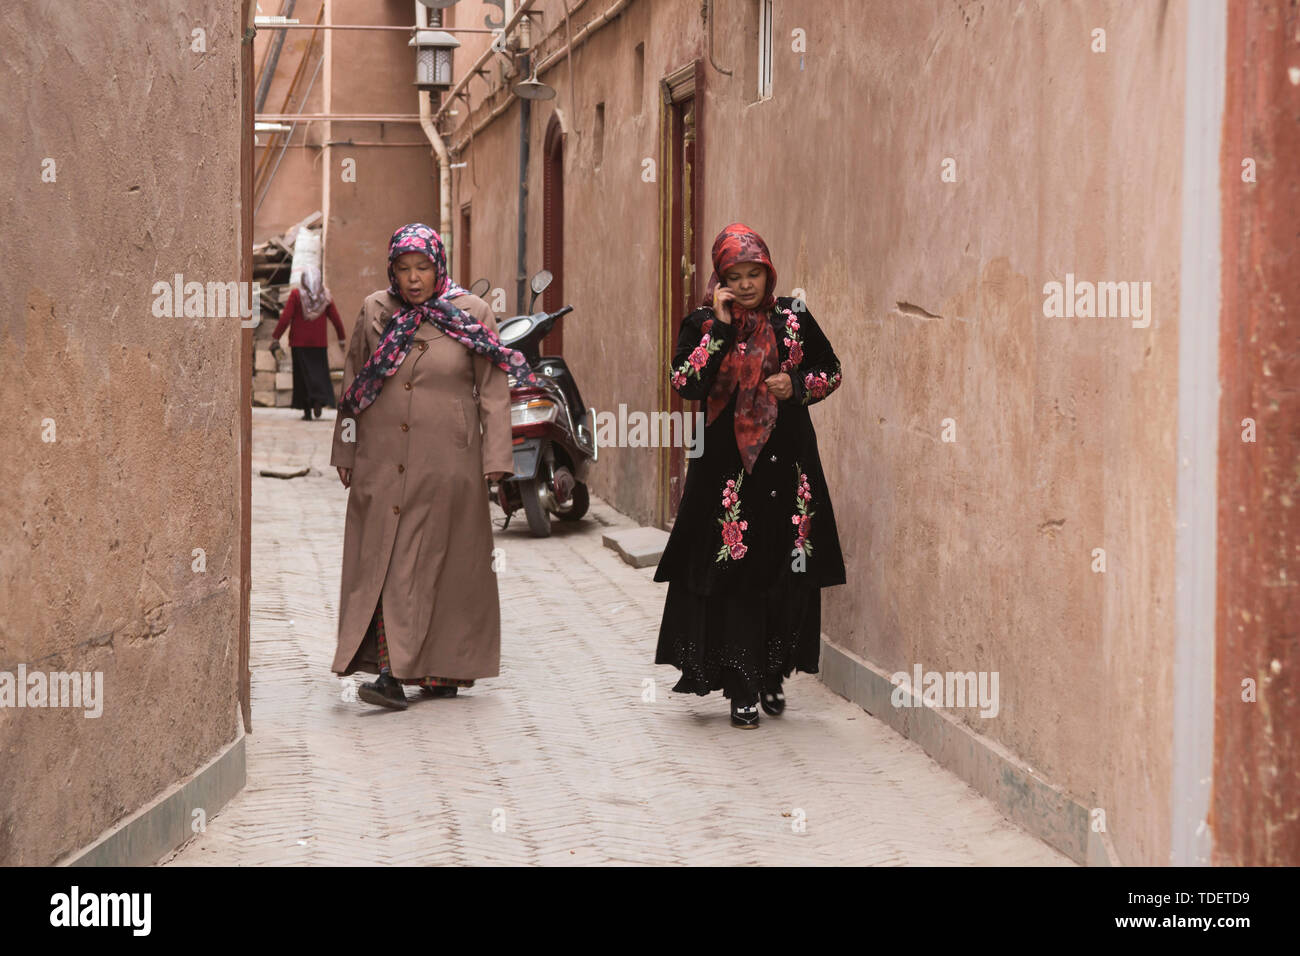 Uno scorcio delle strade di Kashgar, Xinjiang Foto Stock